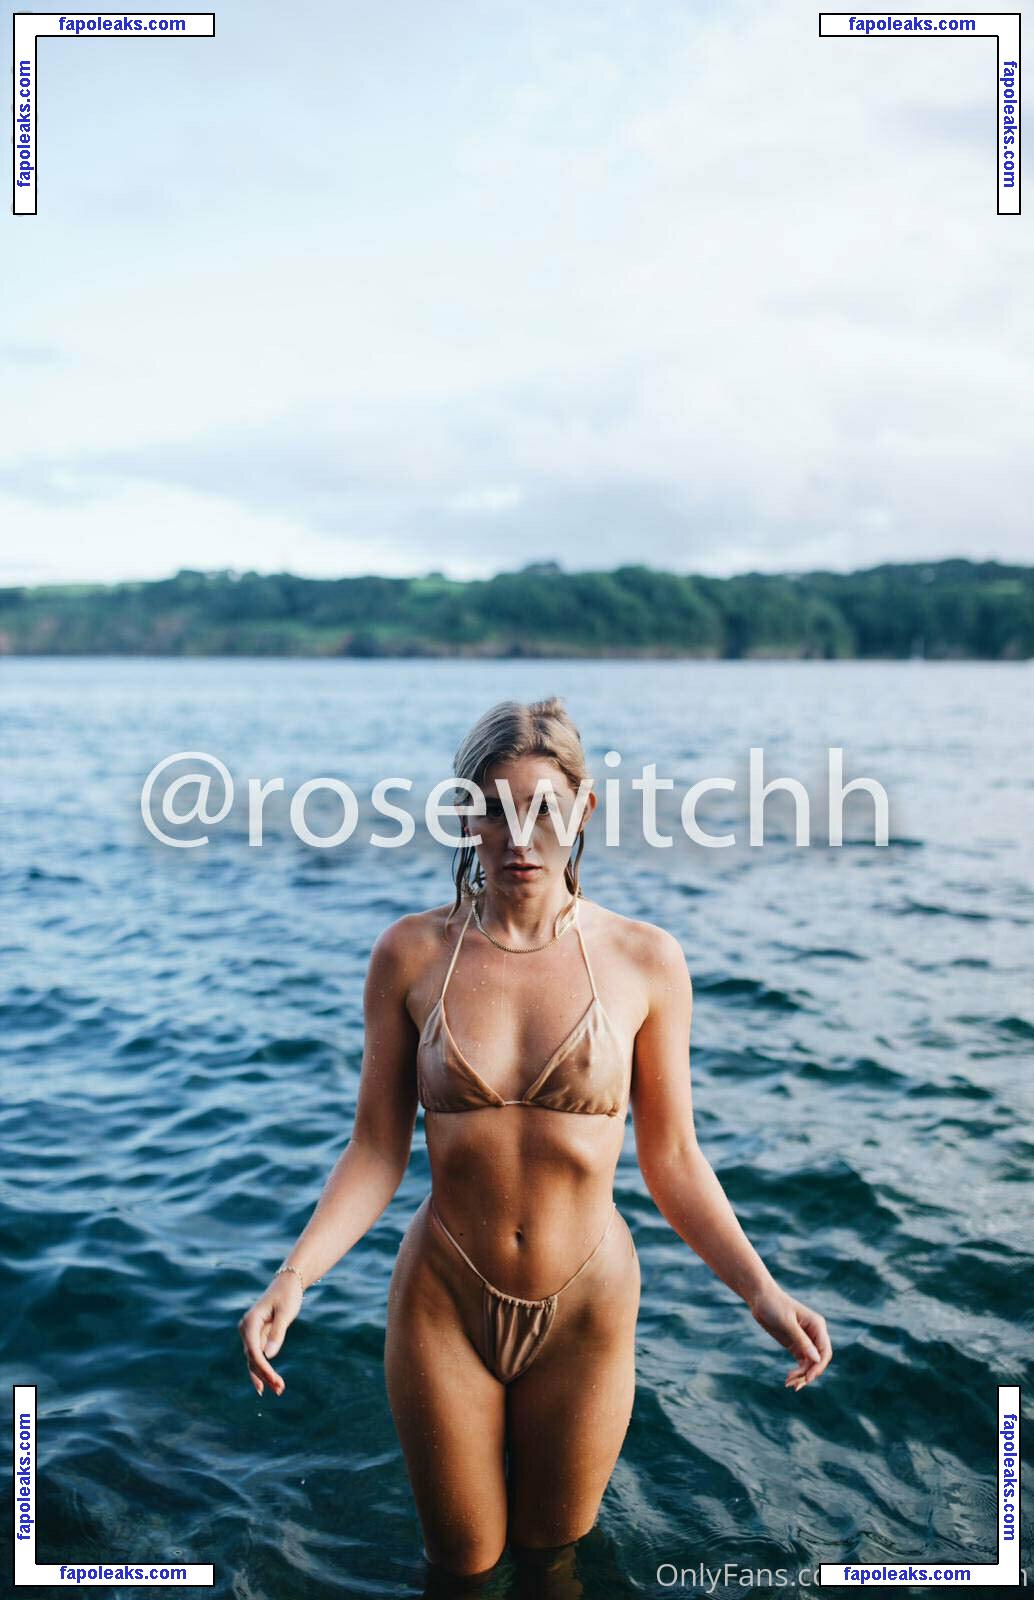 rosewitchh голая фото #0004 с Онлифанс